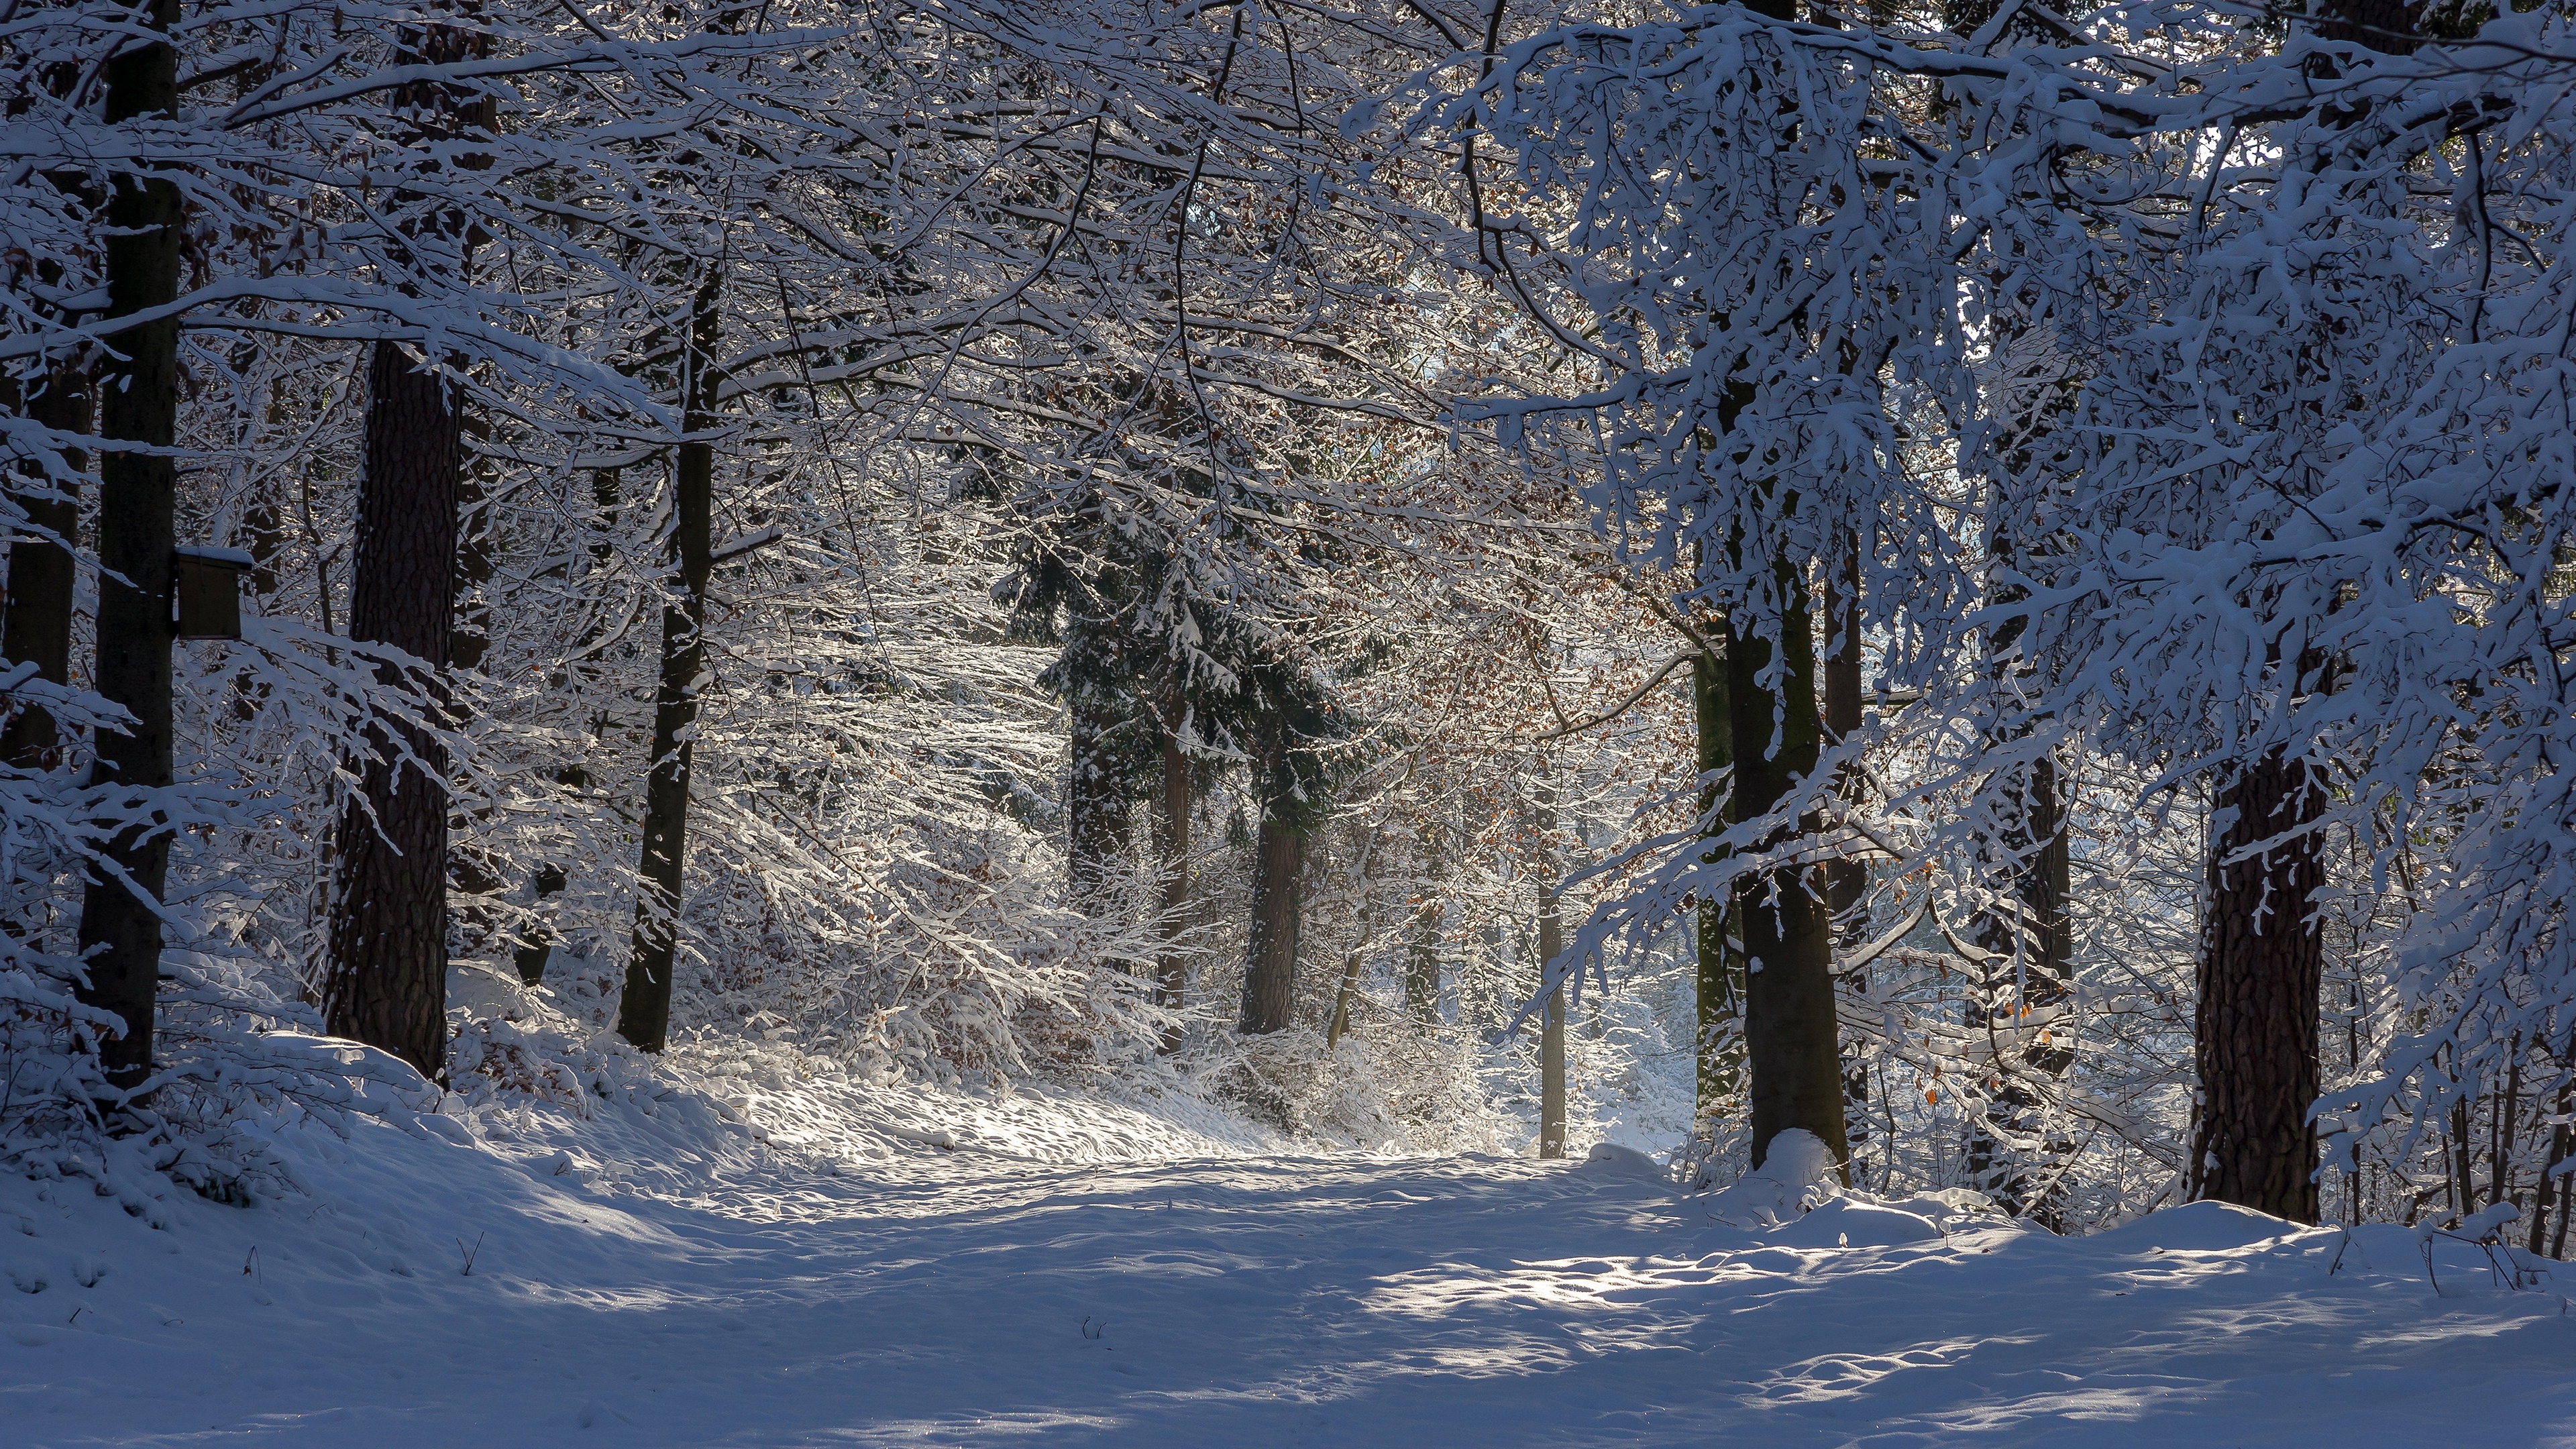 Скачать обои бесплатно Зима, Снег, Лес, Мороз, Дорожка, Ствол, Земля/природа картинка на рабочий стол ПК